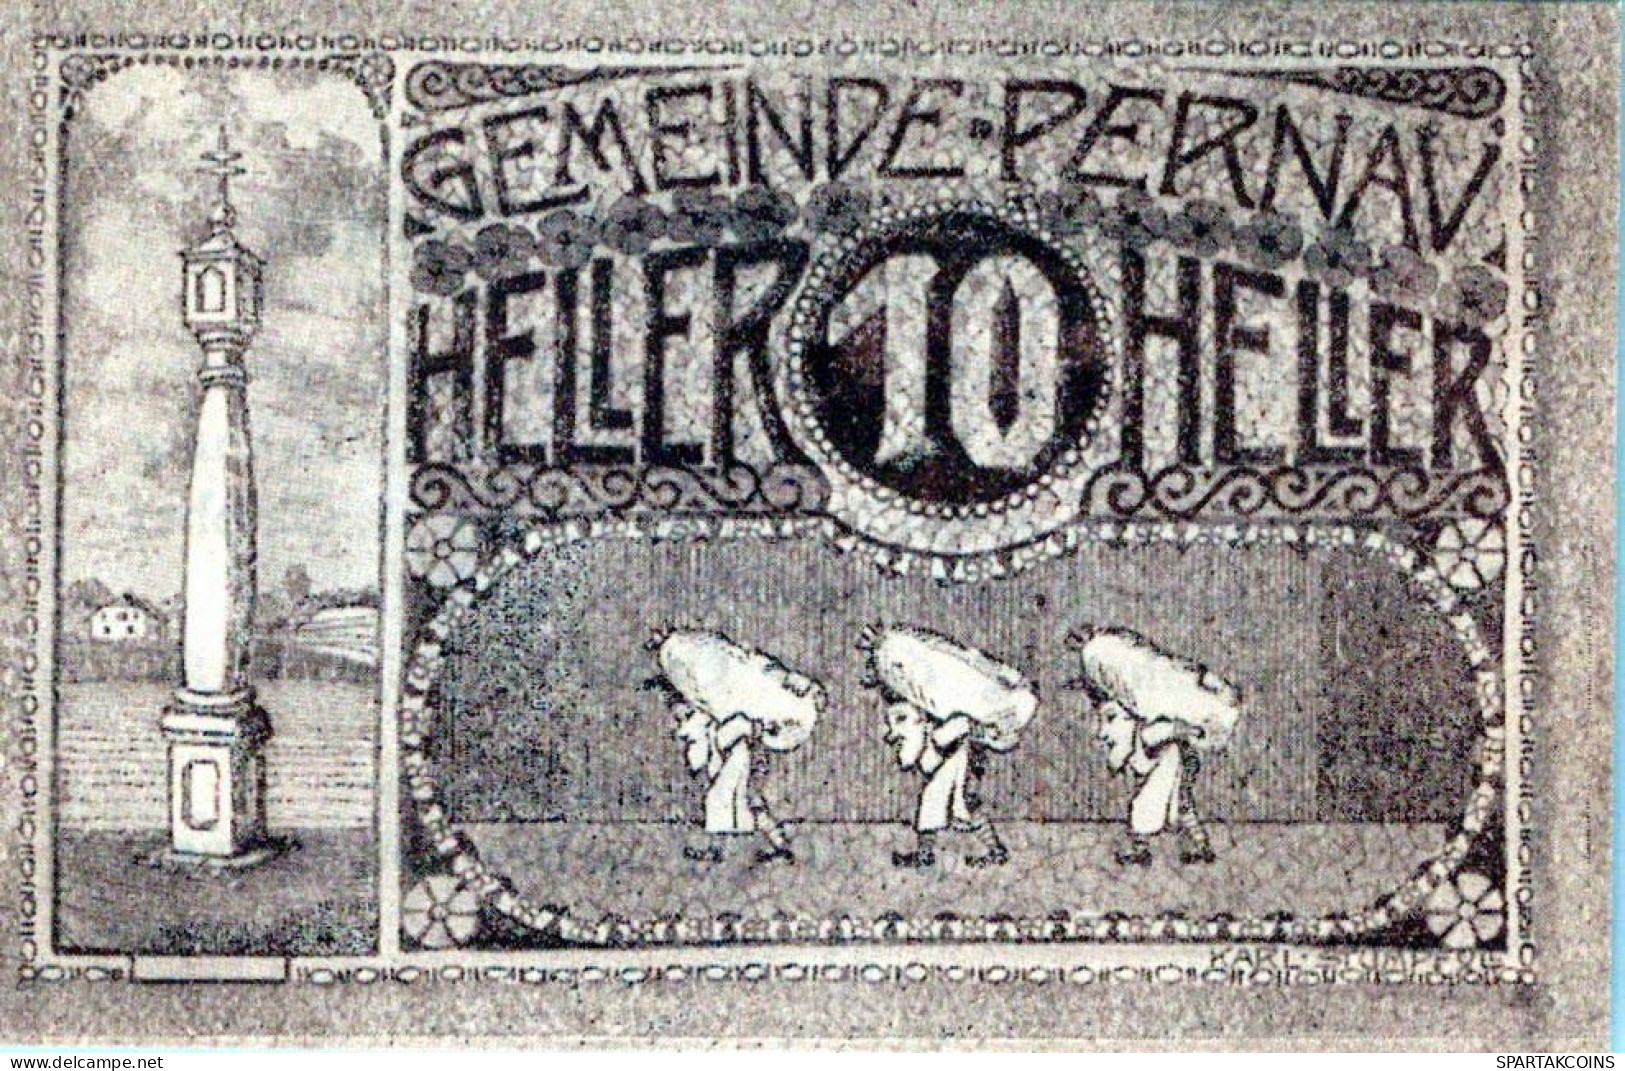 10 HELLER 1920 Stadt PERNAU Oberösterreich Österreich Notgeld Papiergeld Banknote #PG658 - Lokale Ausgaben